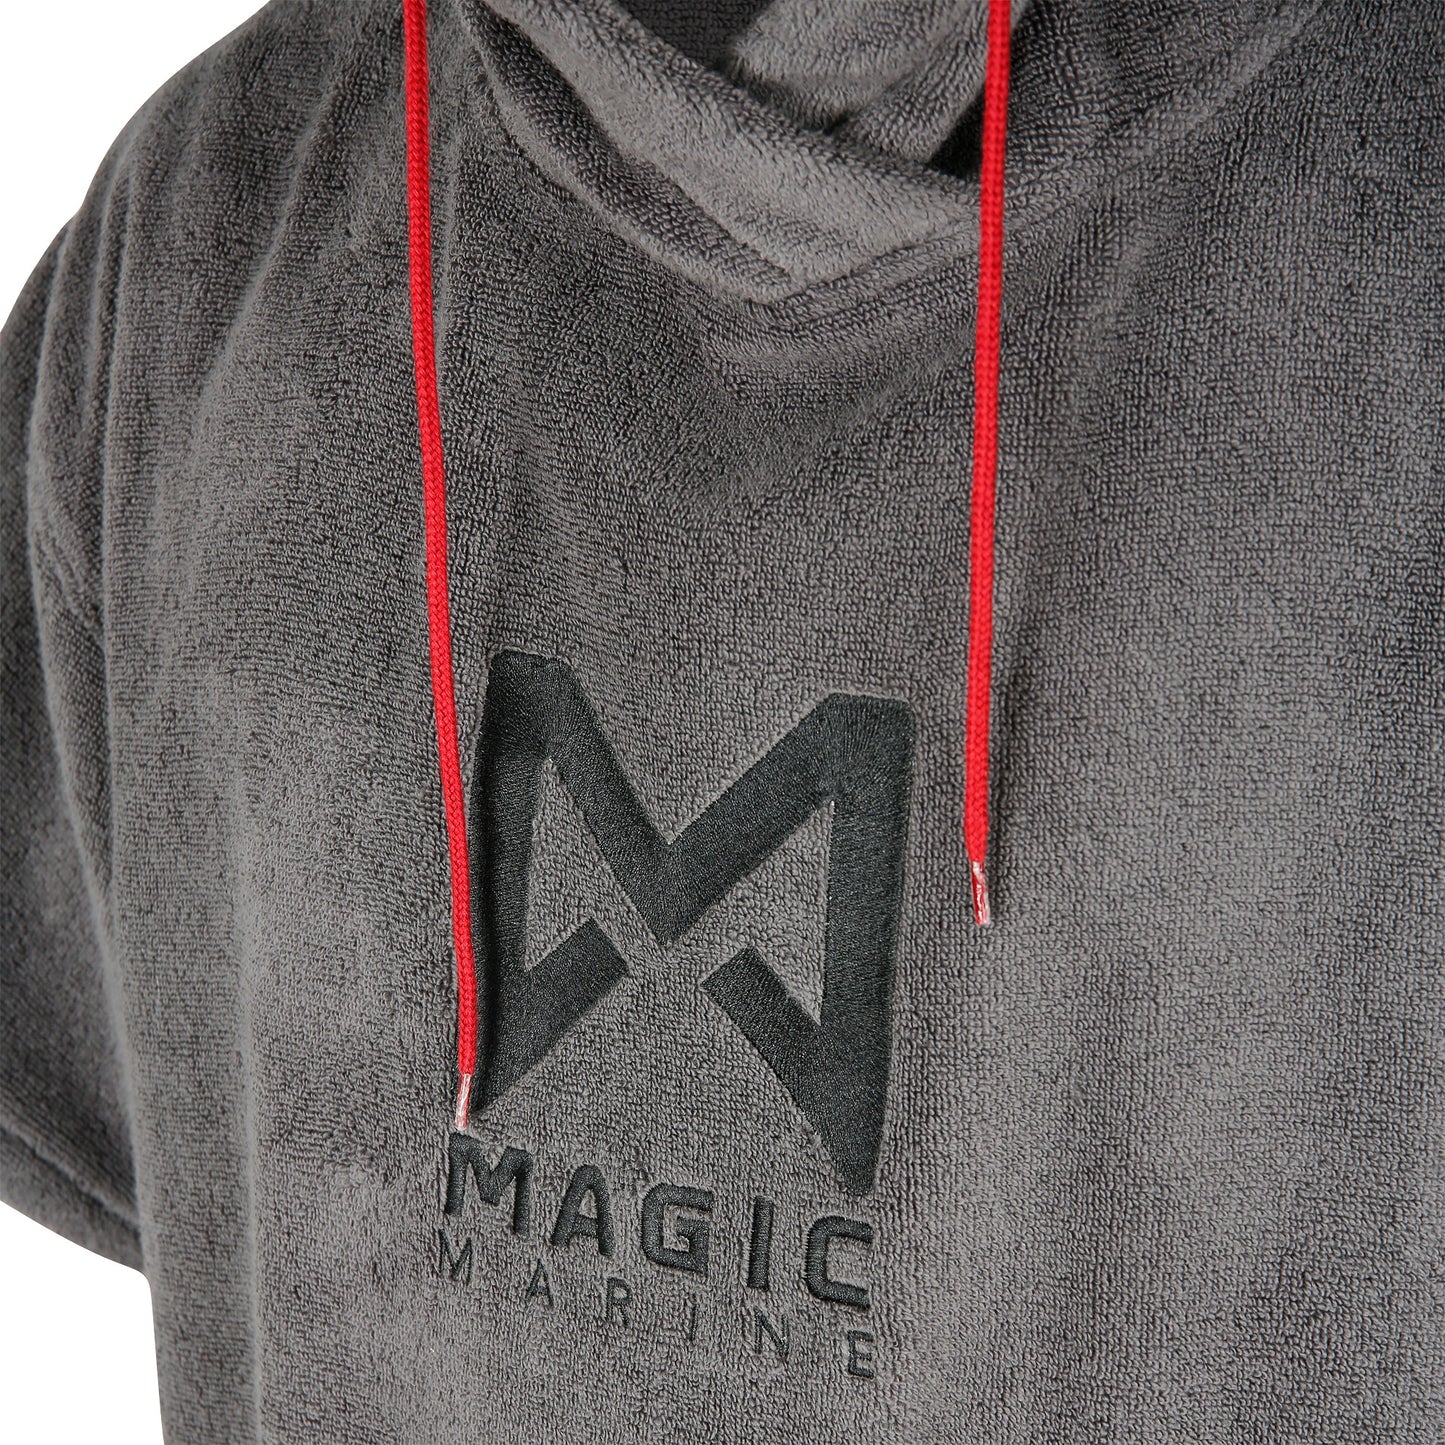 Poncho Magic Marine unisex, one size 100% Cotton